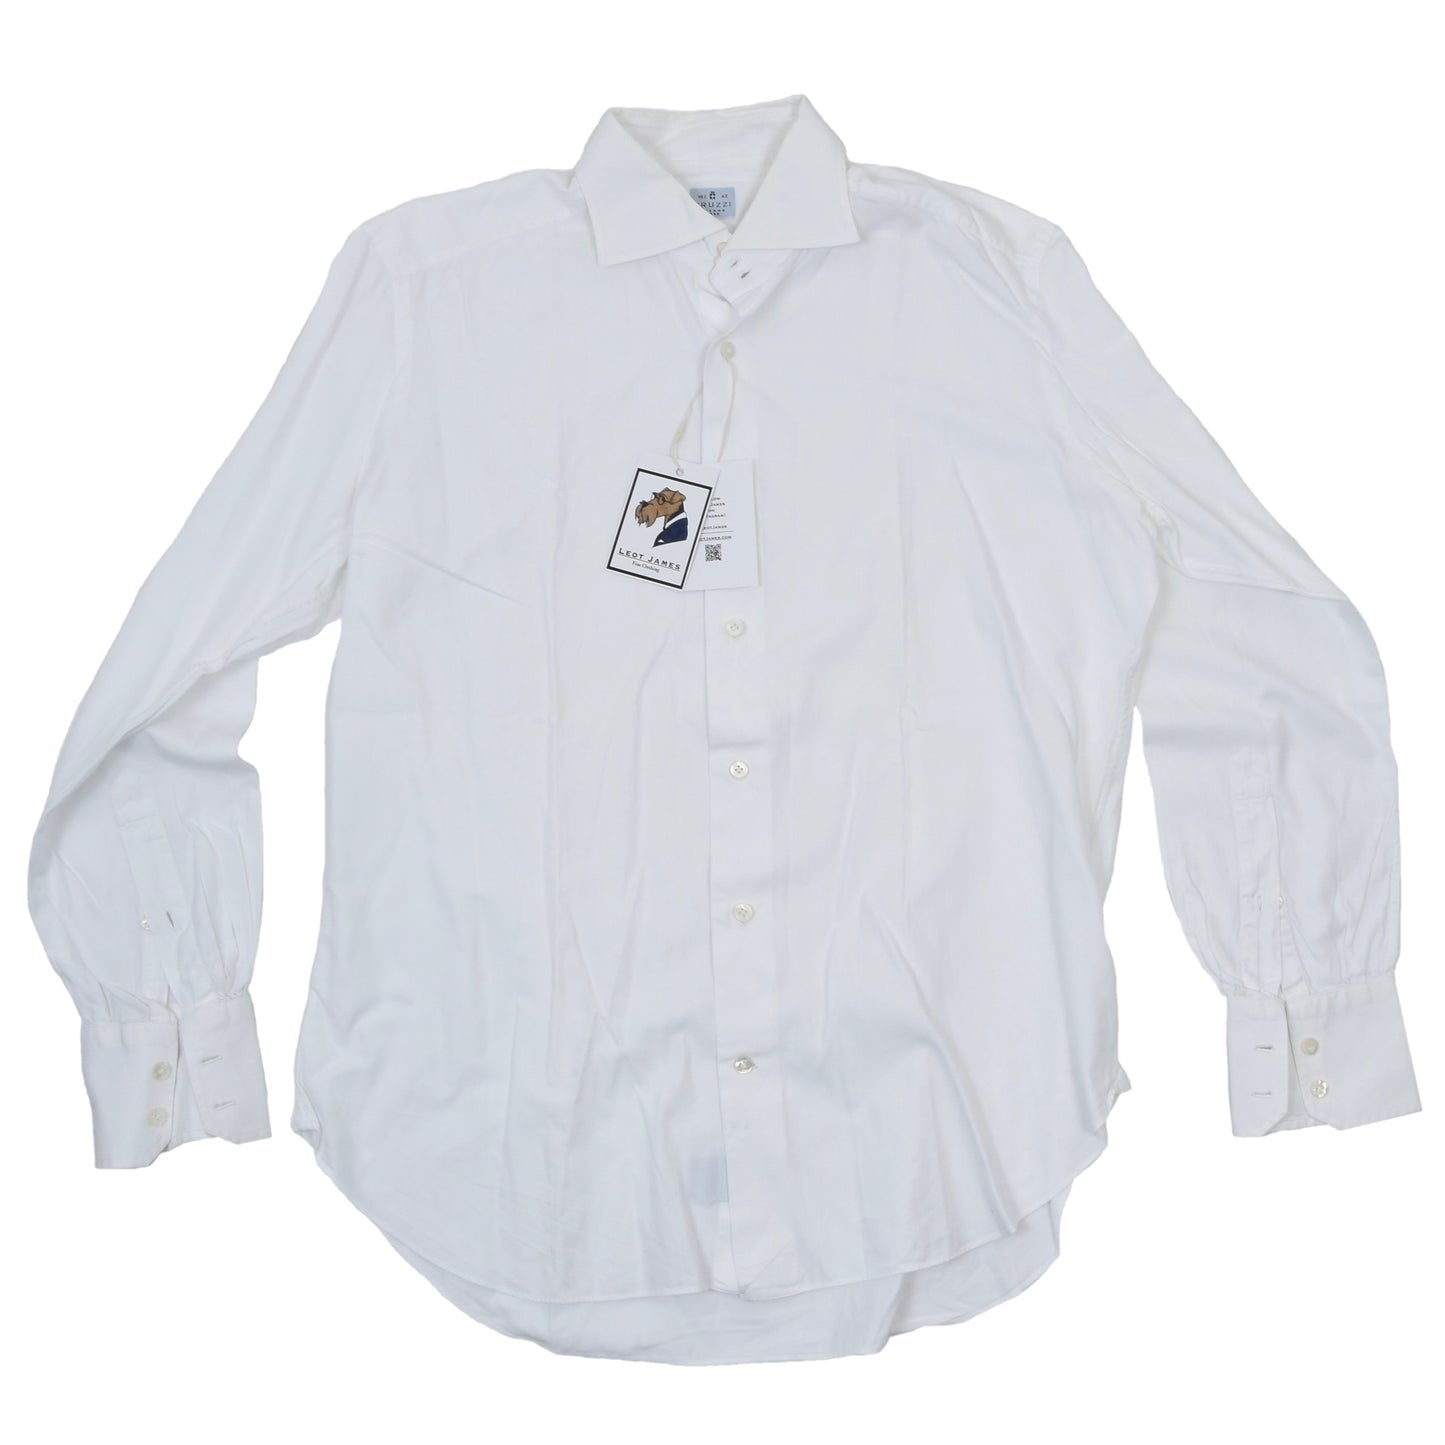 2x Truzzi Milano Shirts Size 42 - White